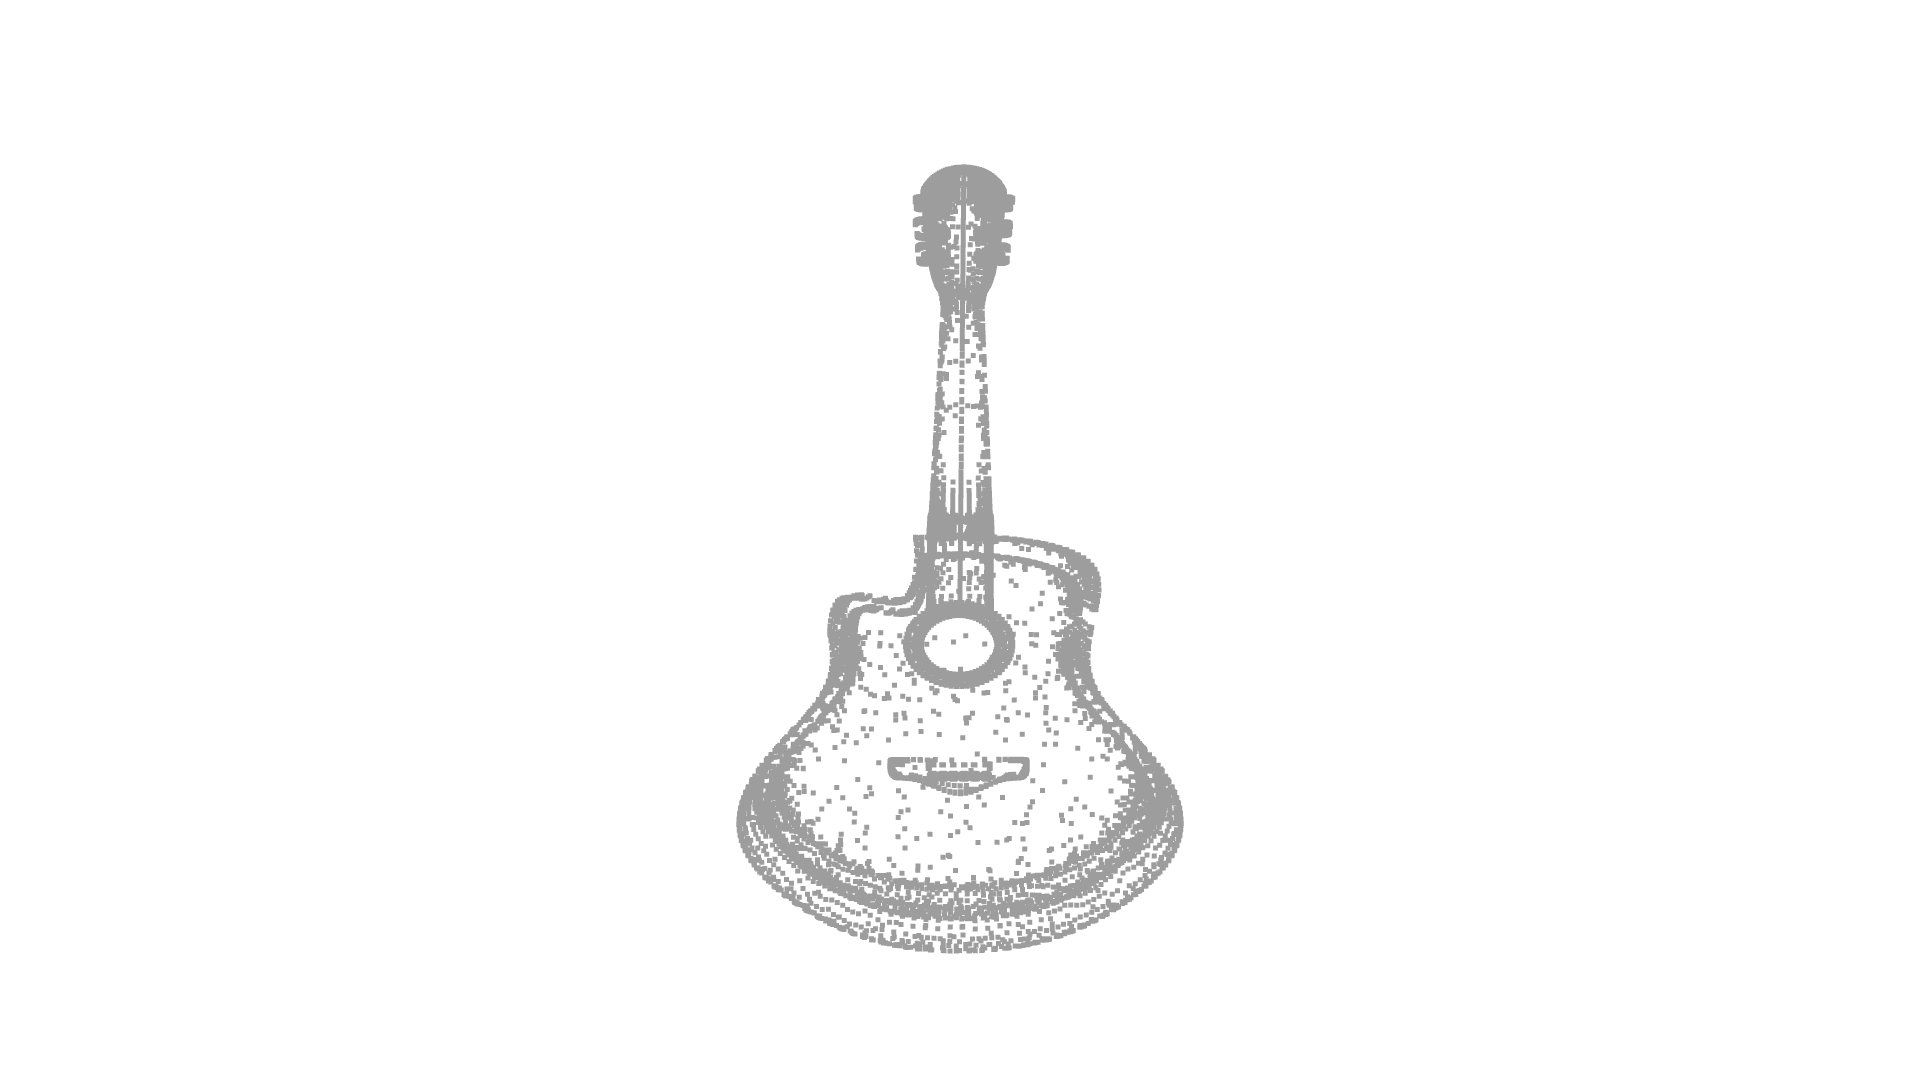 guitar 3d model